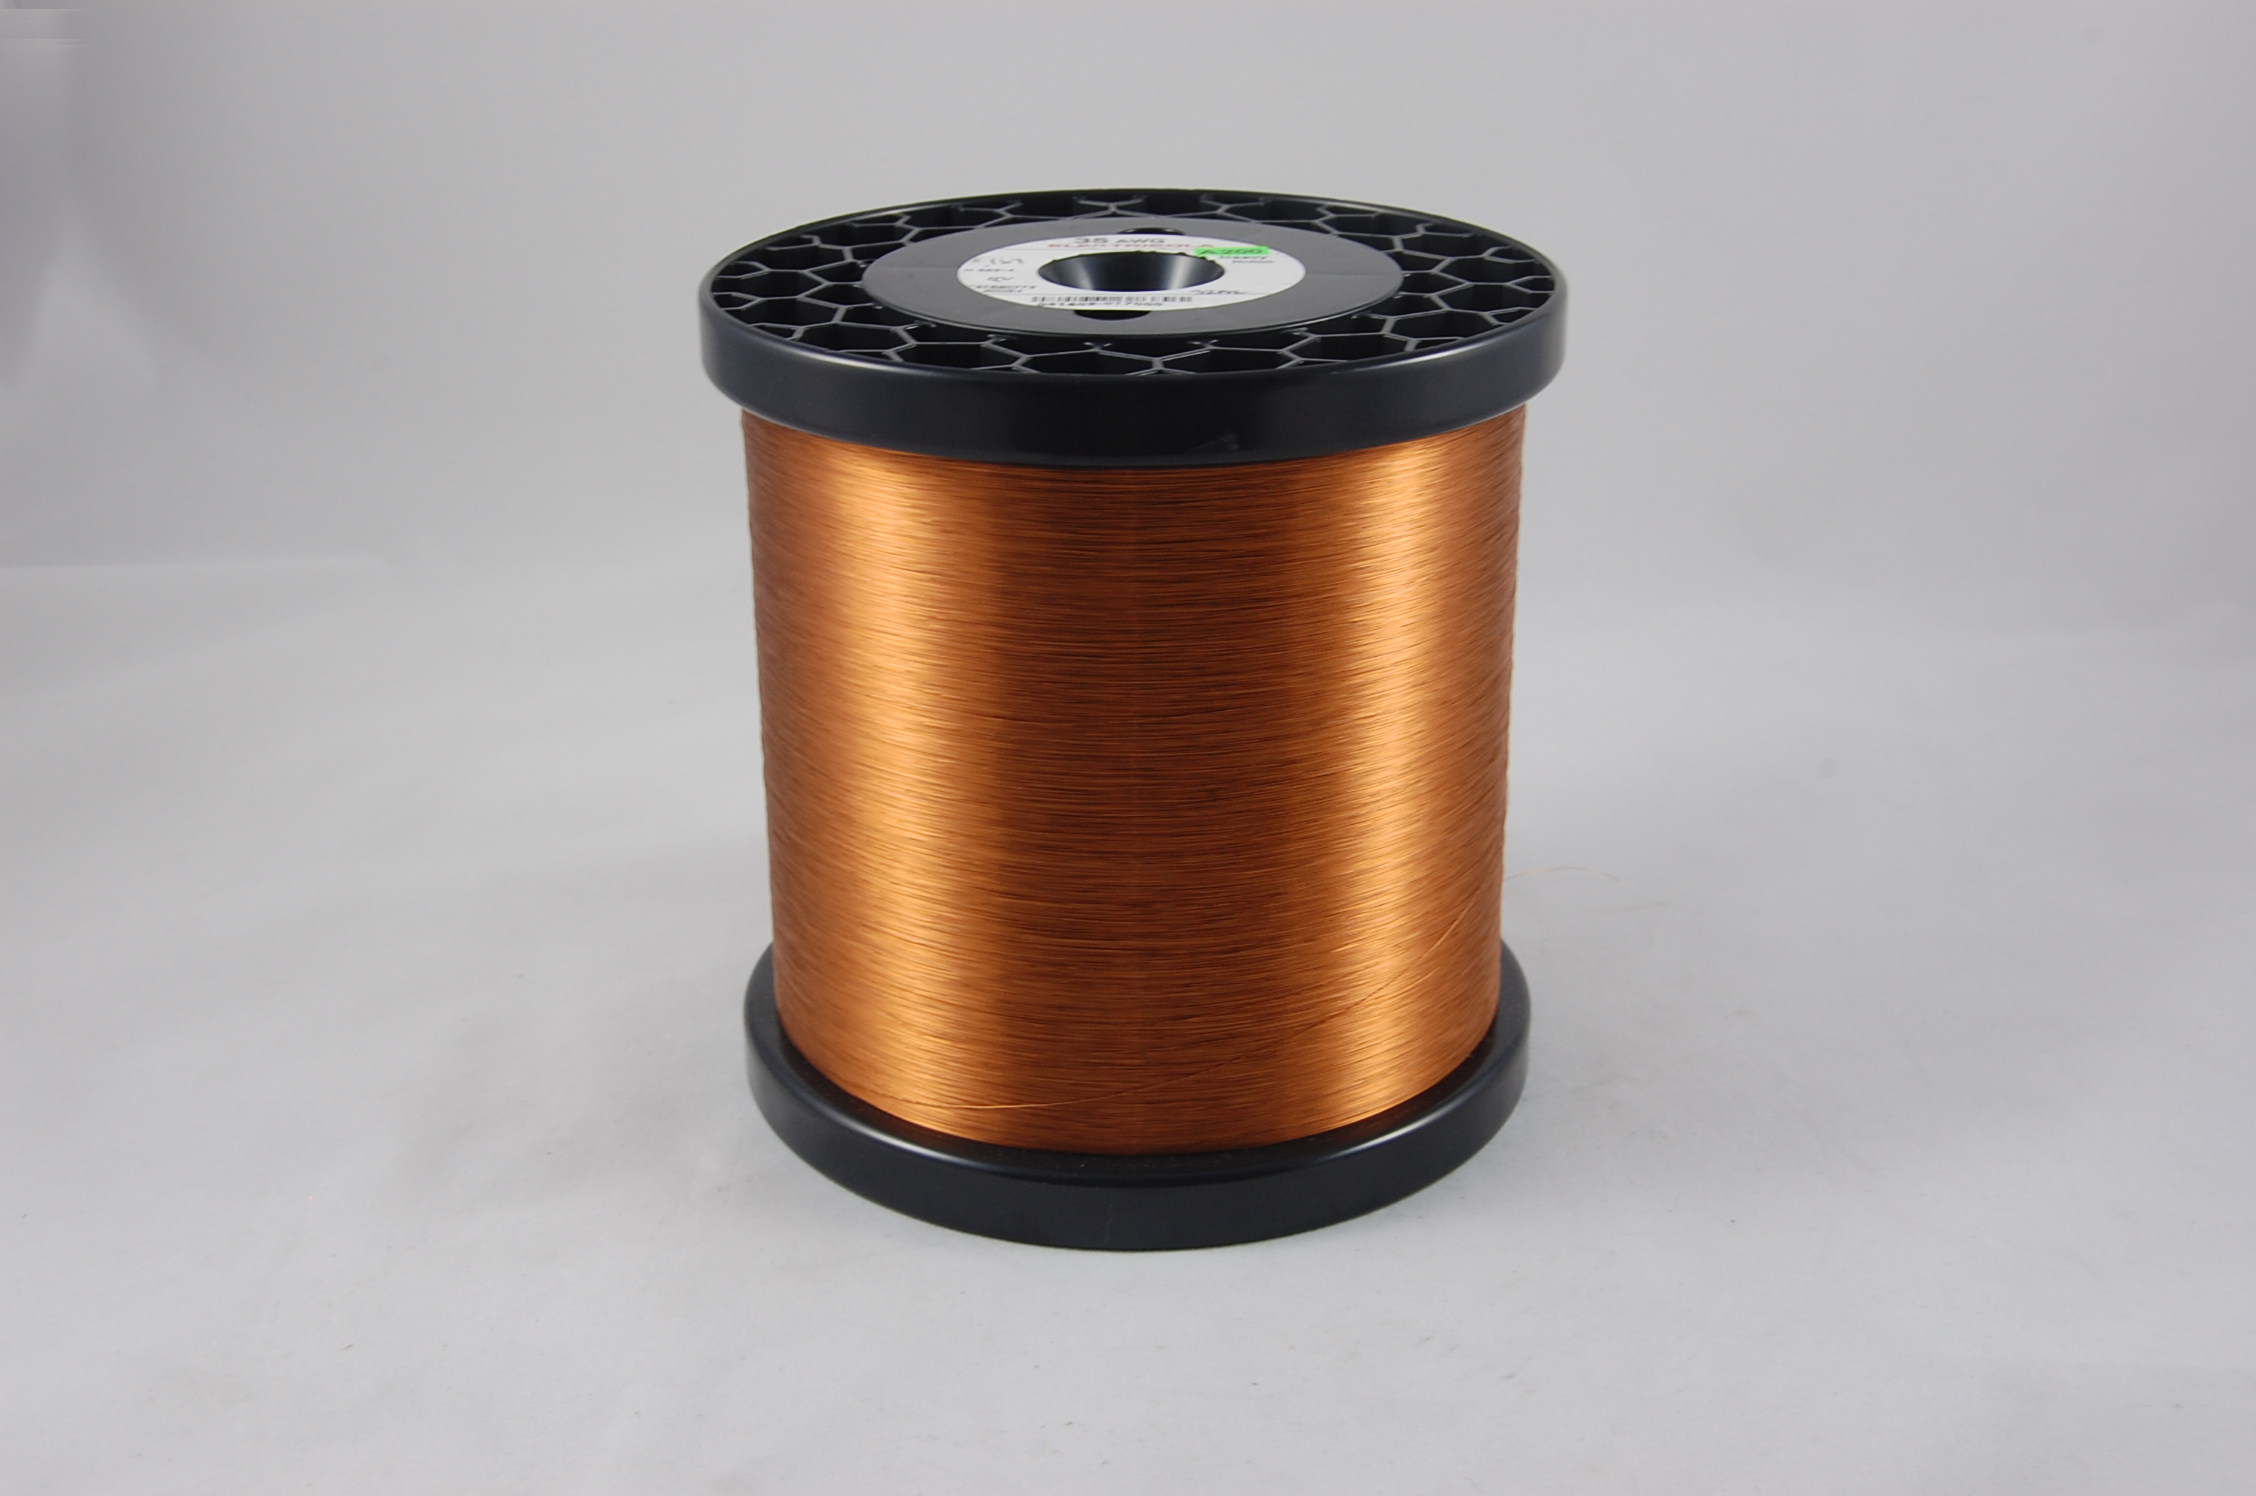 #36 Single Amidester 200 Round MW 74 Copper Magnet Wire 200°C, copper,  14 LB 6" x 6" spool (average wght.)